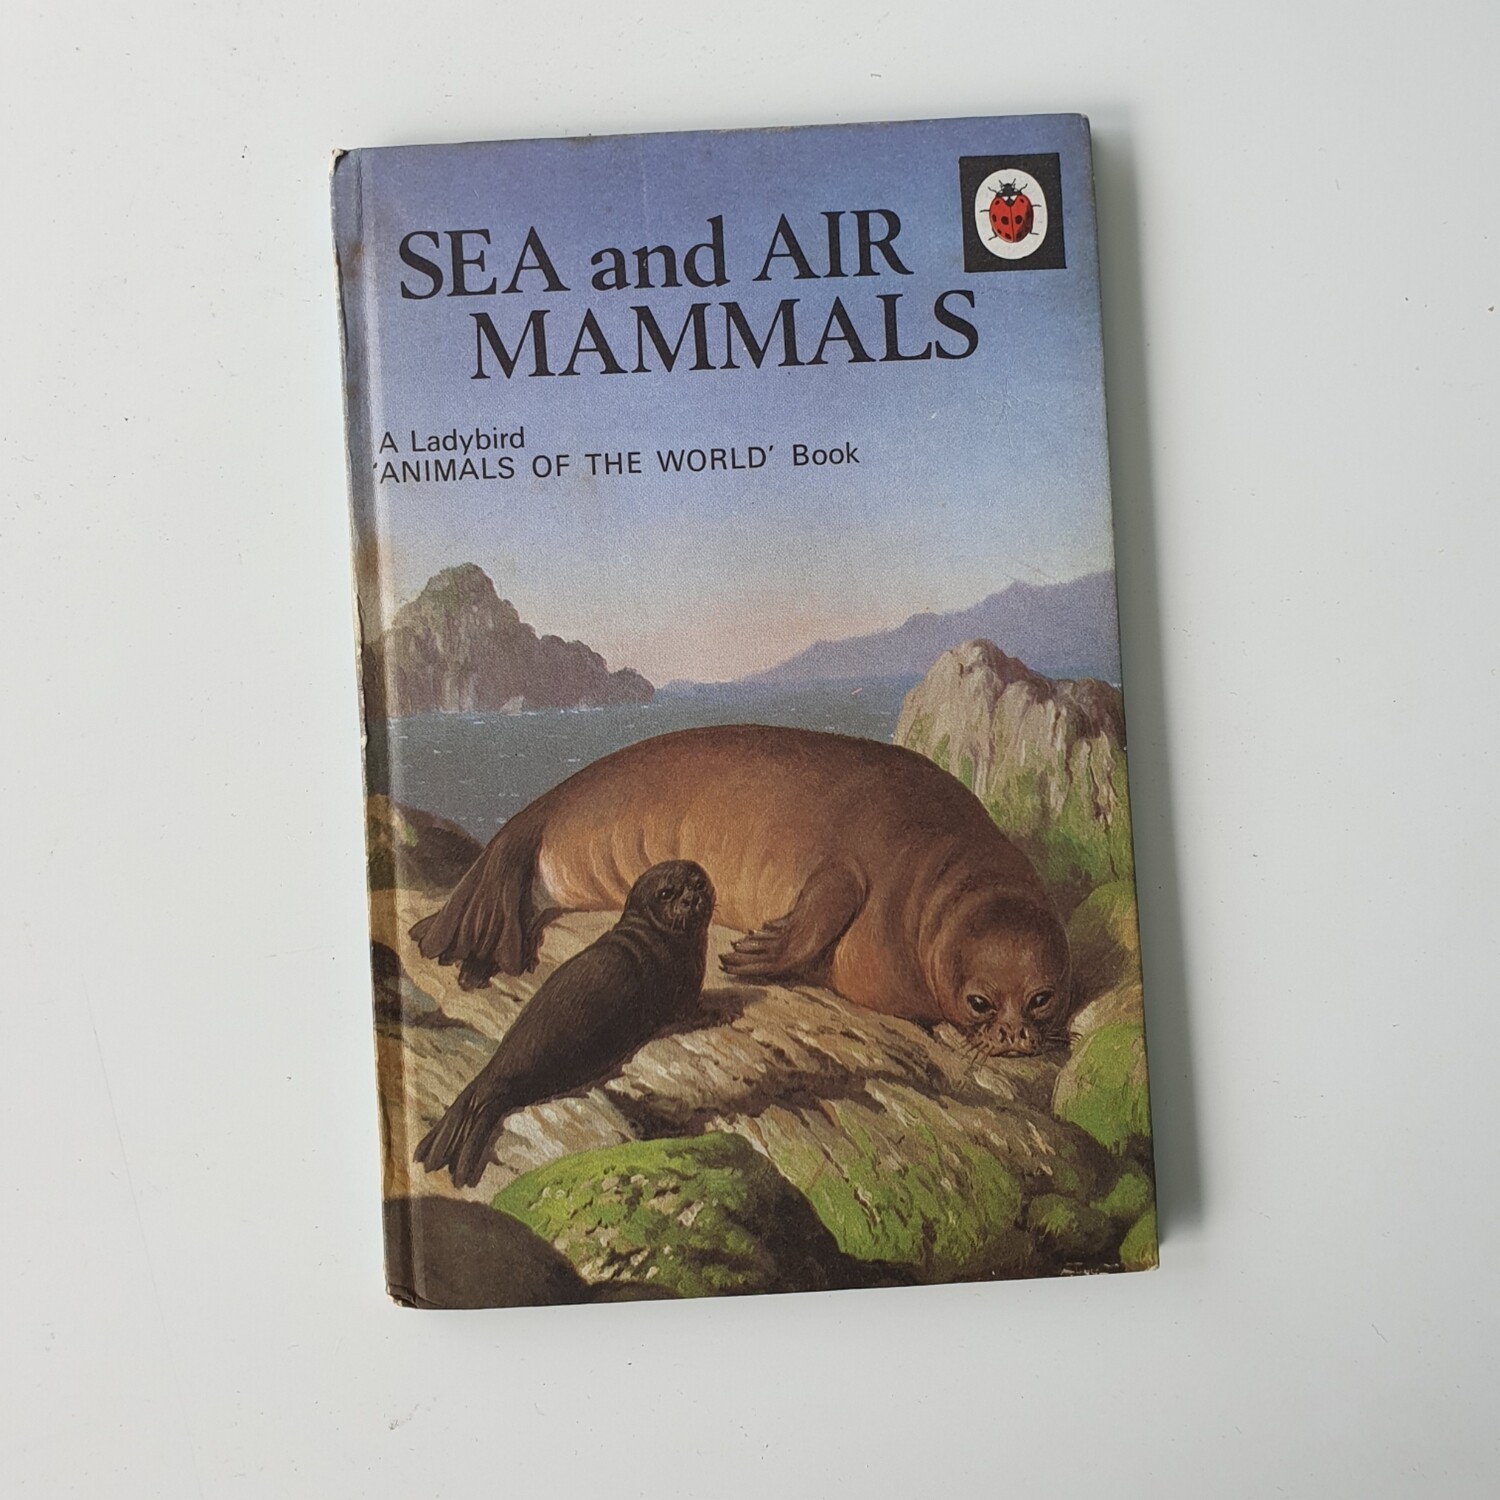 Sea and Air Mammals Notebook - Ladybird book